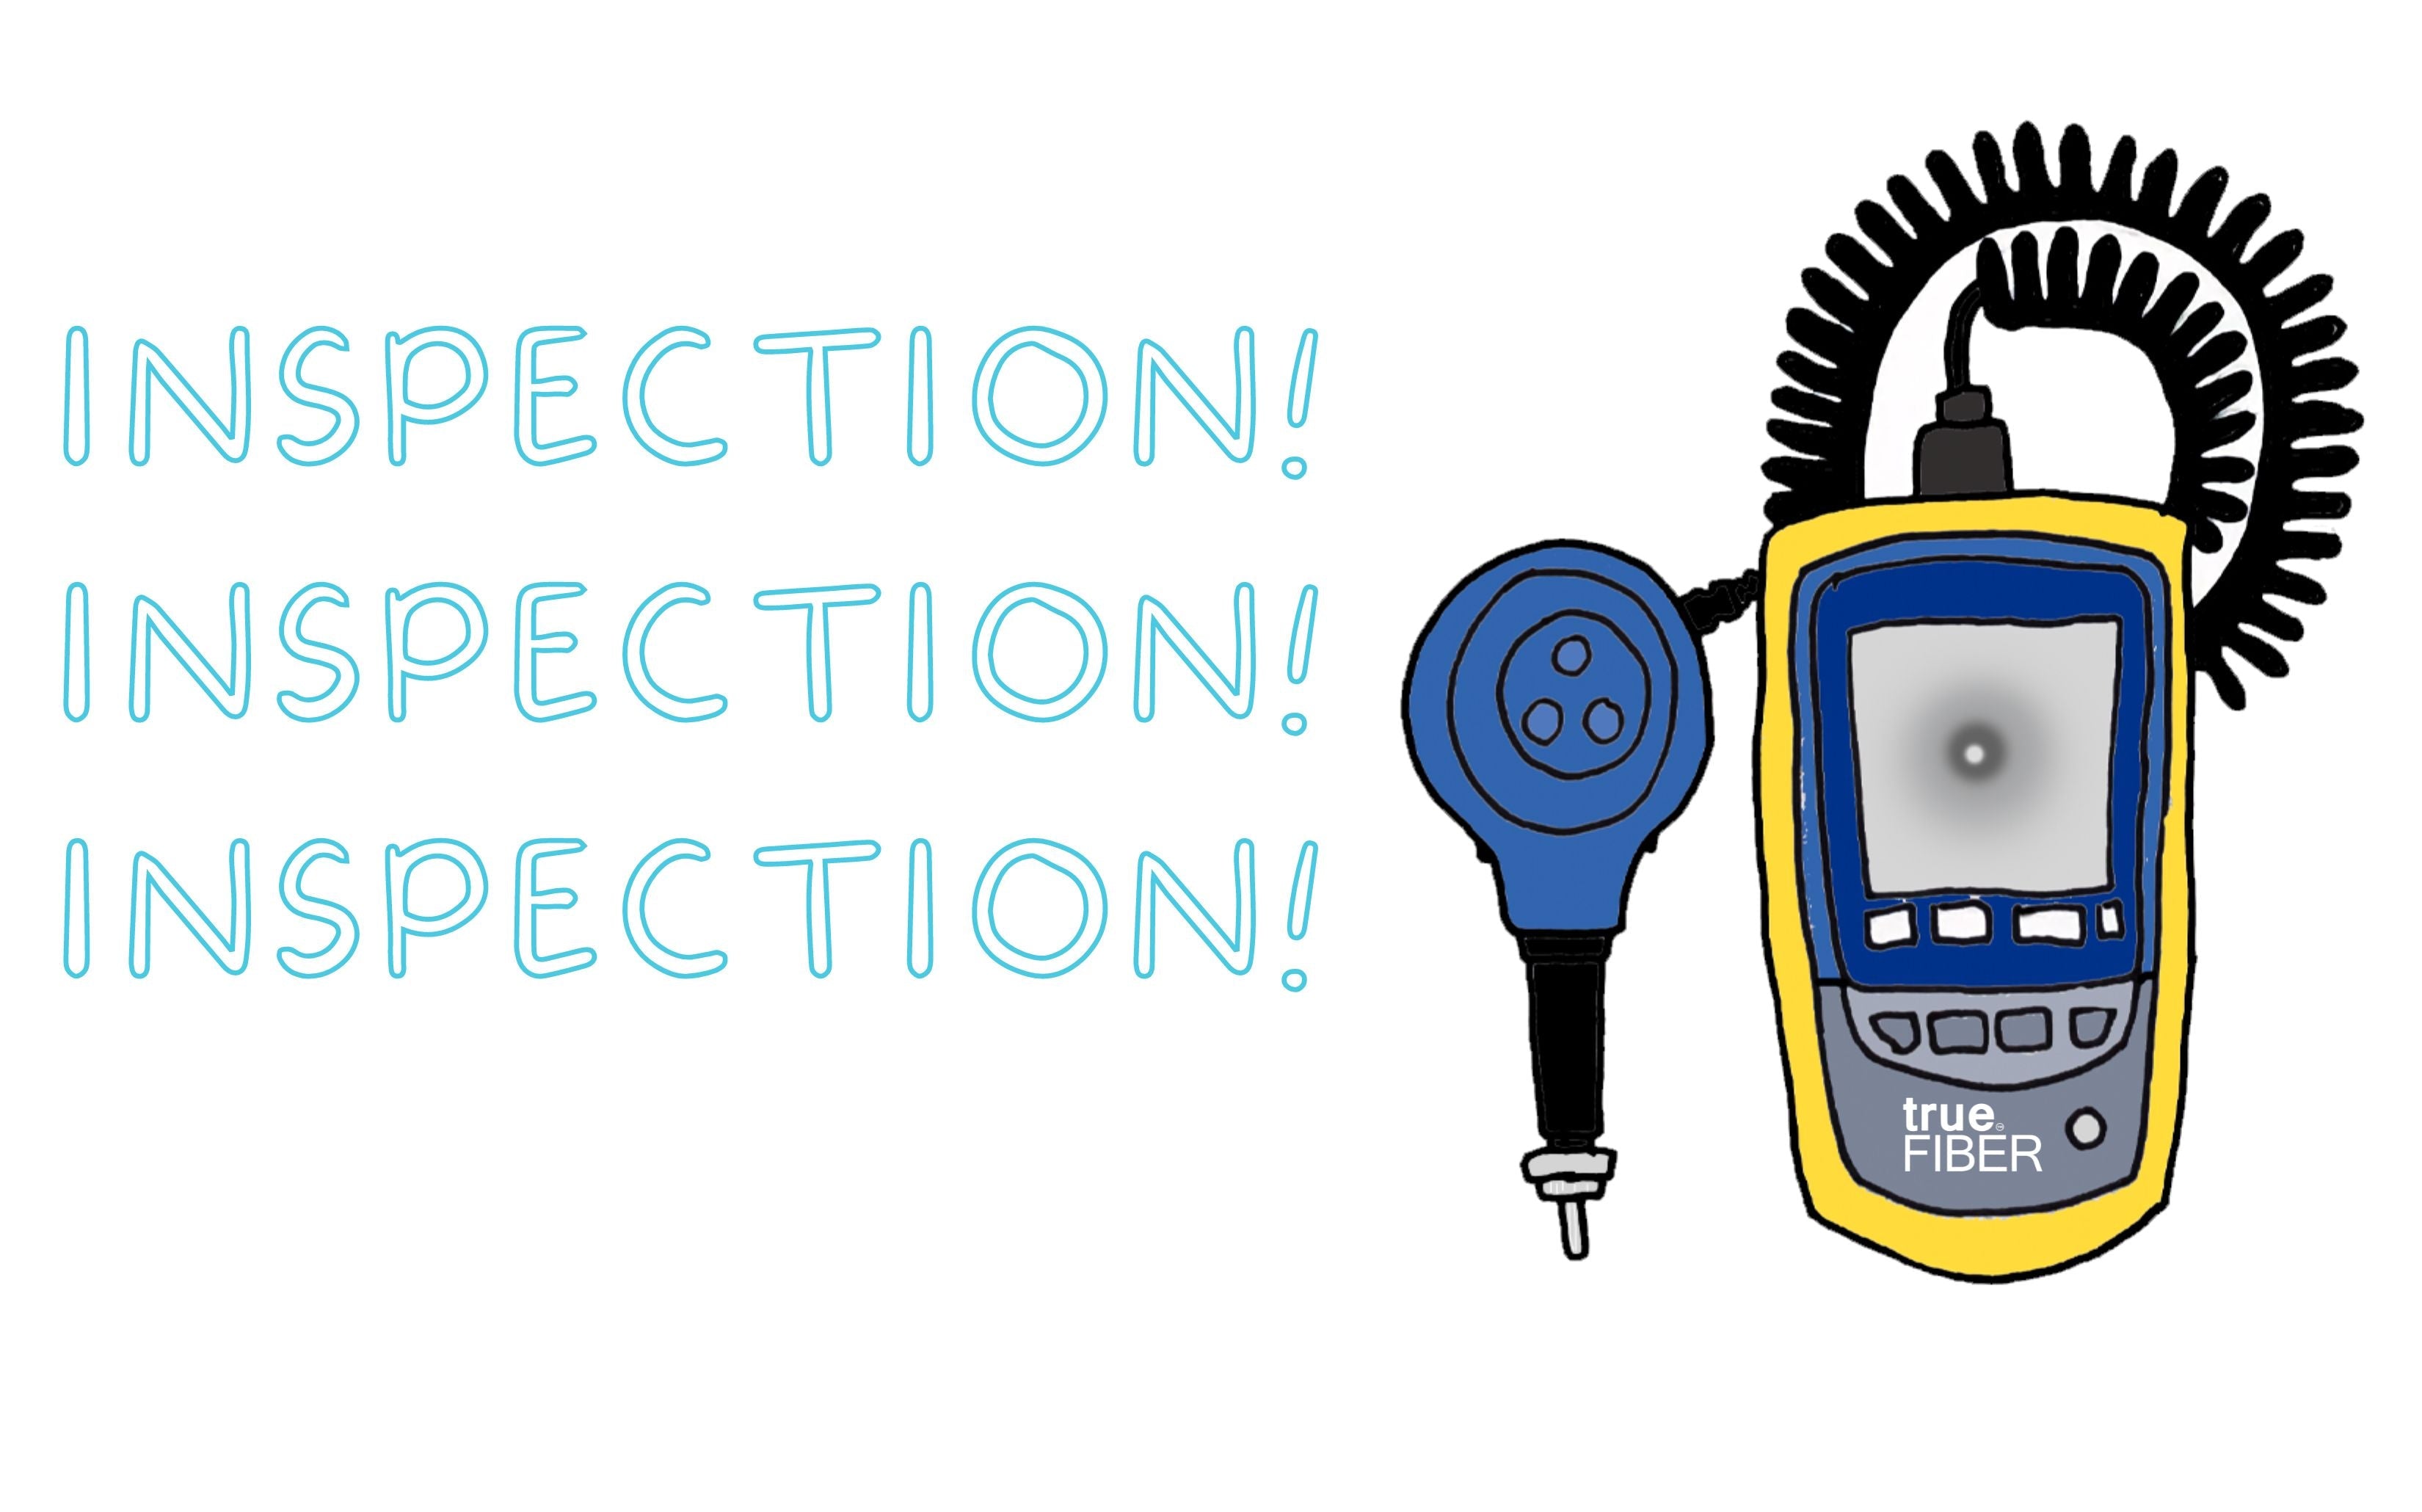 Fiber Optic Inspection! Inspection! Inspection!